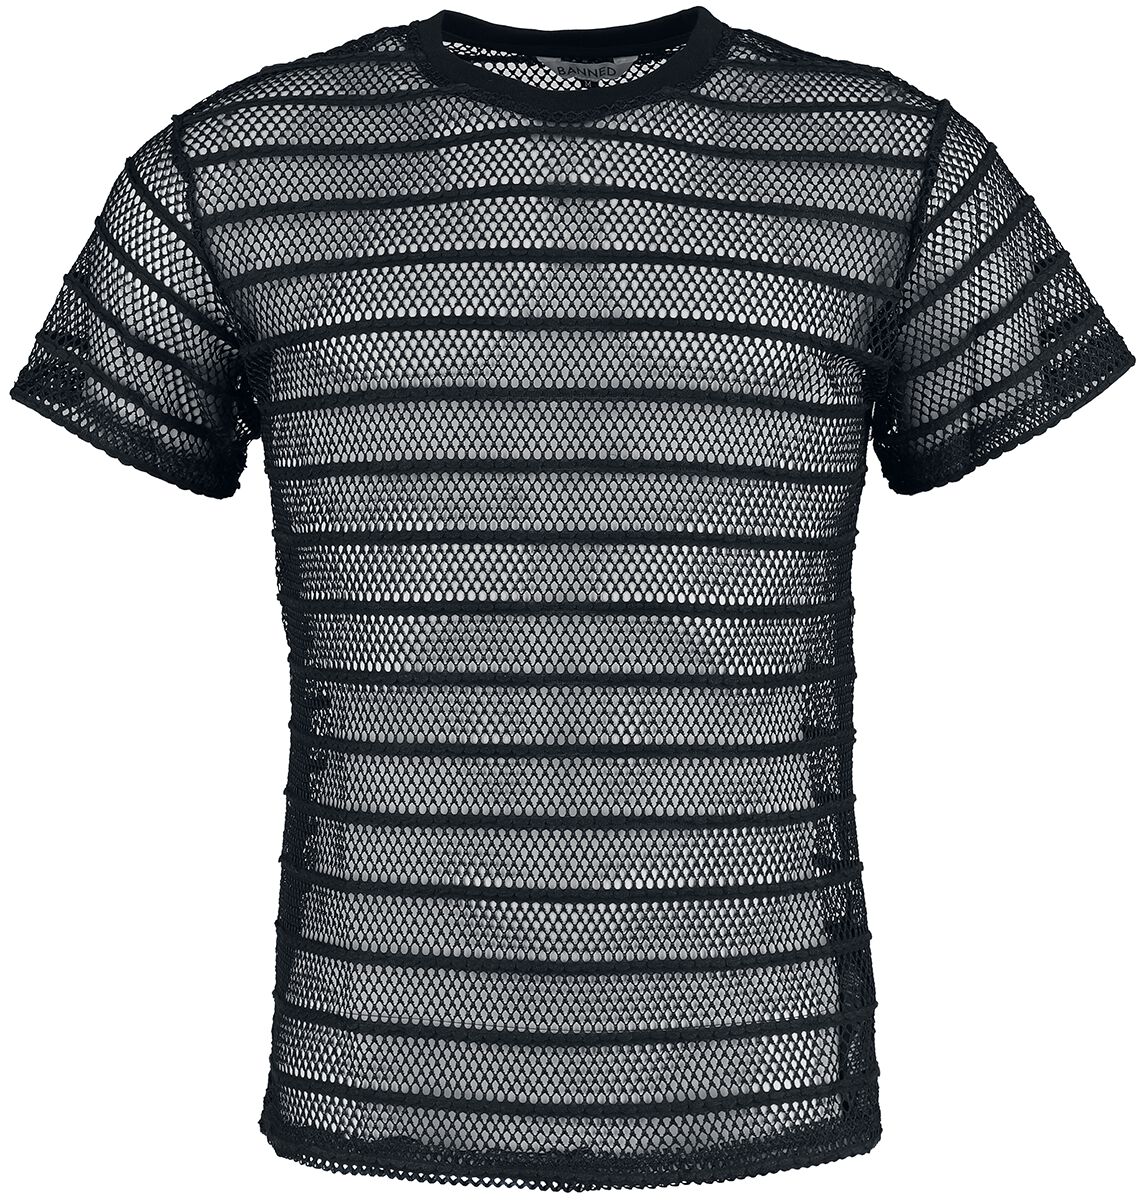 Banned Alternative - Gothic T-Shirt - Black Mesh Shirt - S bis XXL - für Männer - Größe XXL - schwarz